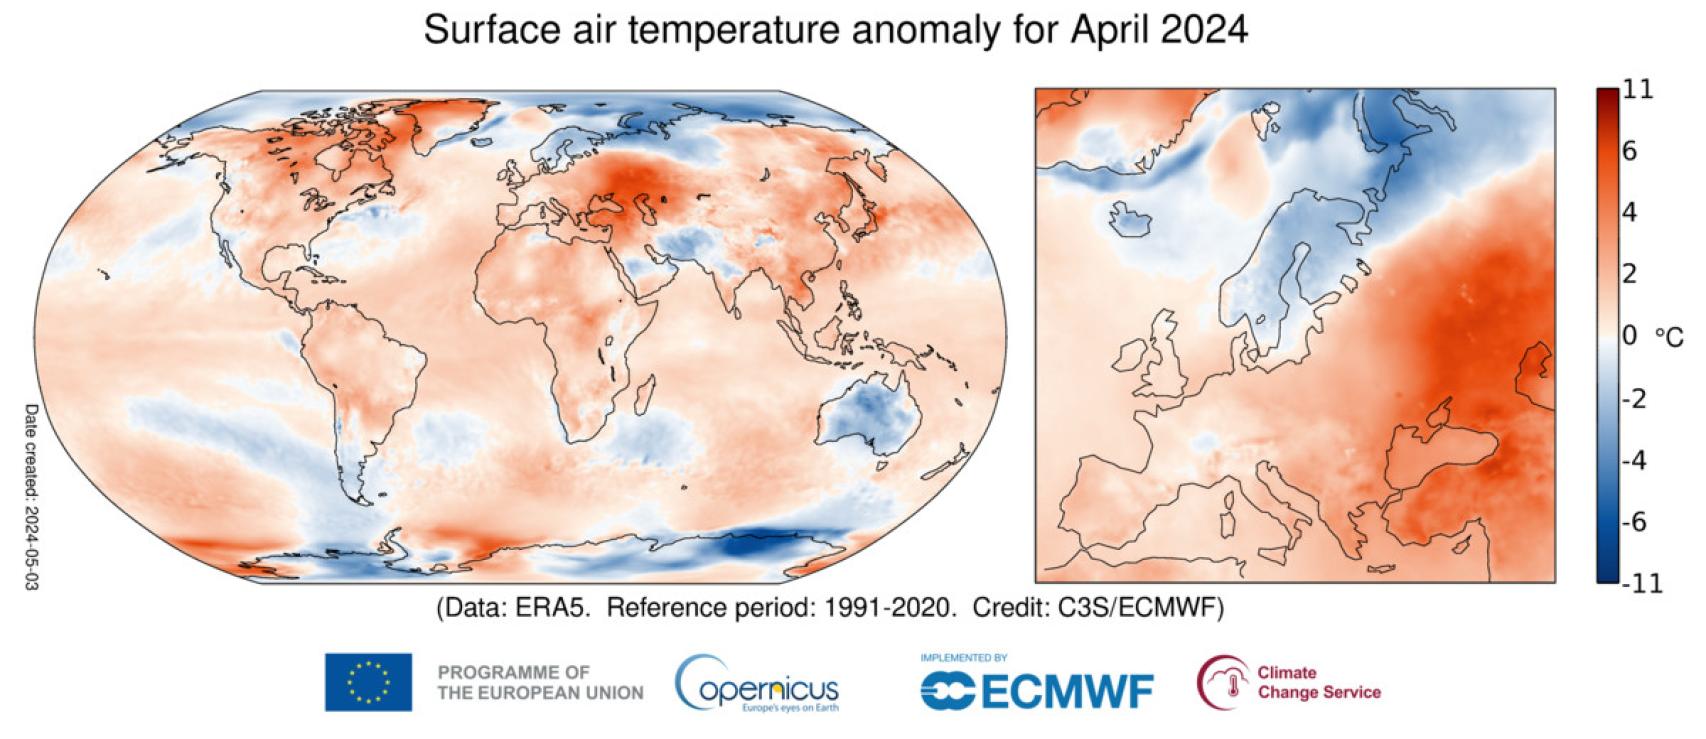 Anomalía de la temperatura del aire en superficie para abril de 2024 con respecto al promedio de abril para el período 1991-2020.